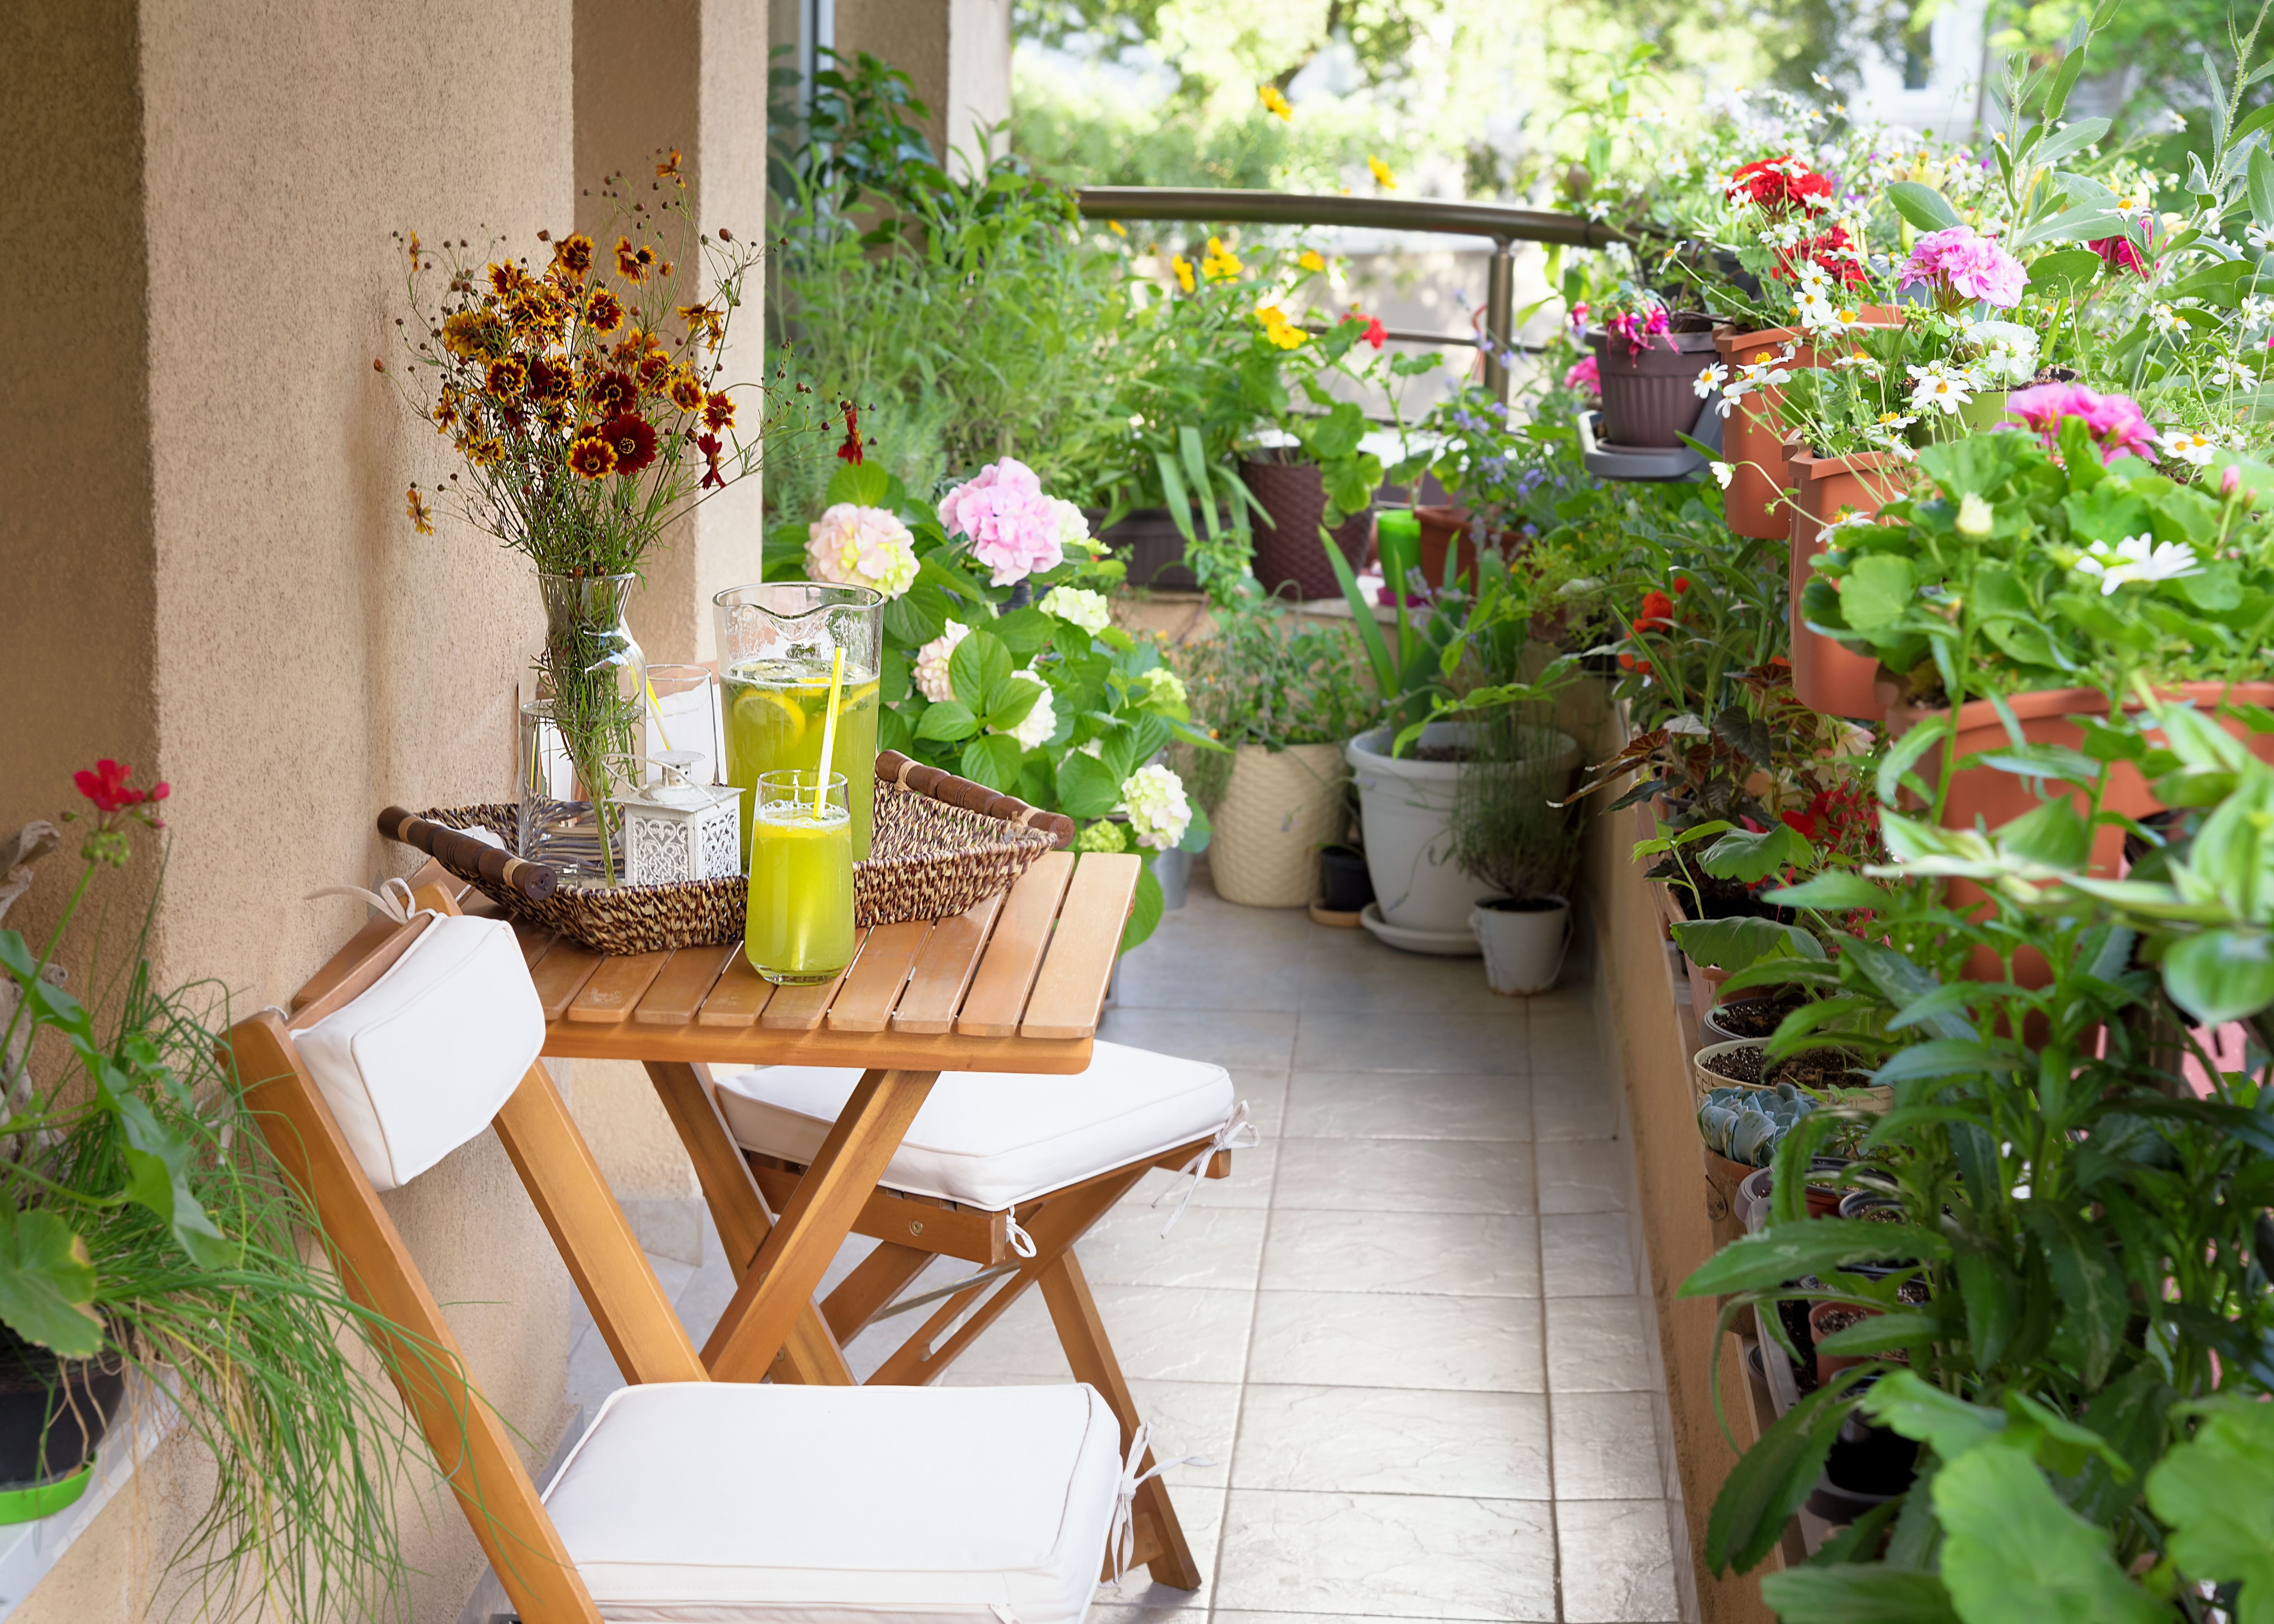 Balcony gardening. Озеленение балкона. Растения на балконе. Украшение балкона цветами. Уютный балкон с цветами.